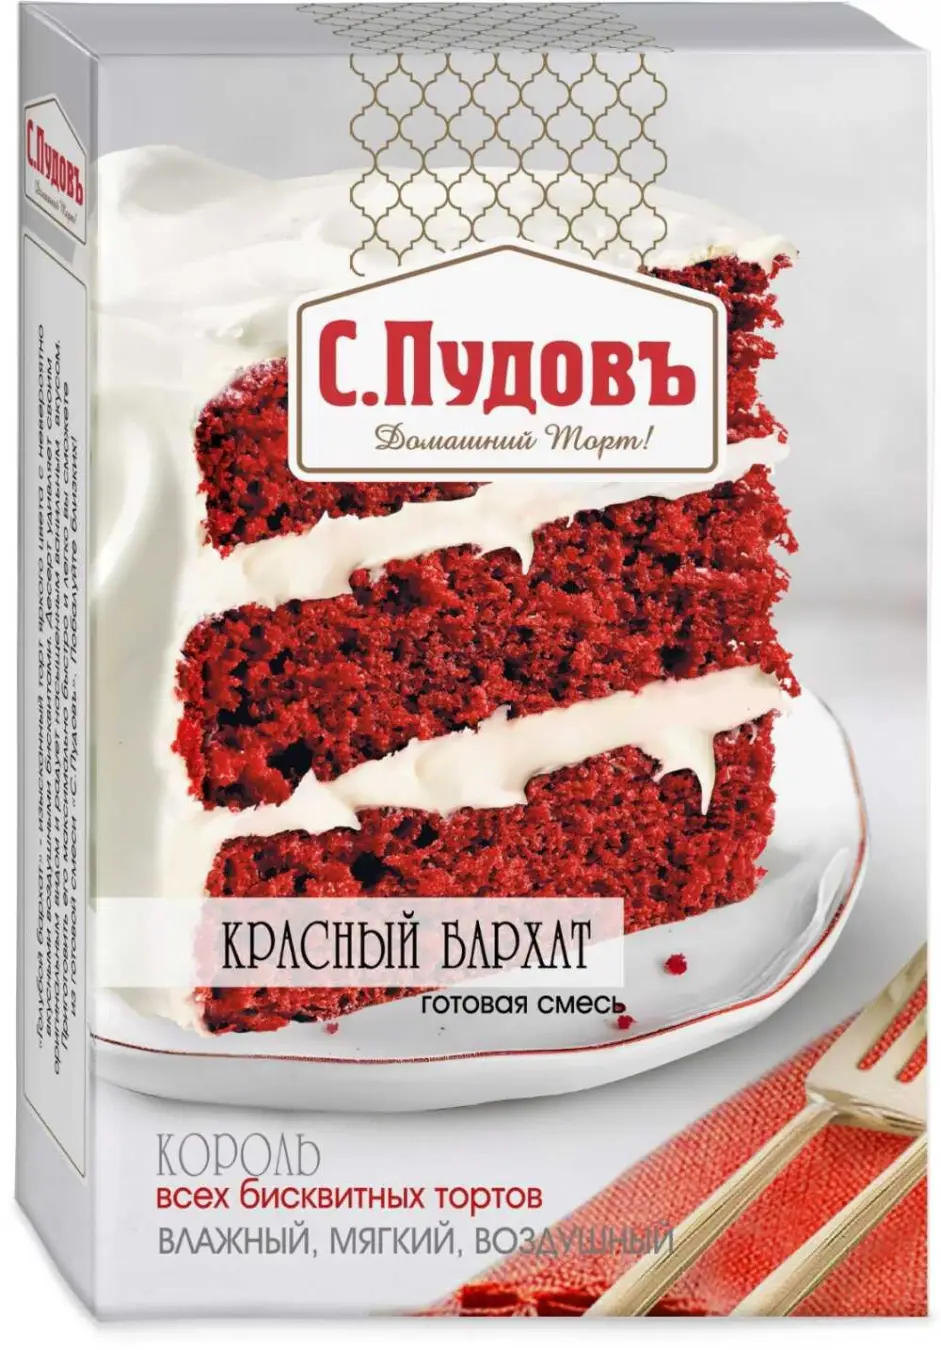 Торт Красный бархат готовая смесь С.Пудовъ 400 гр.